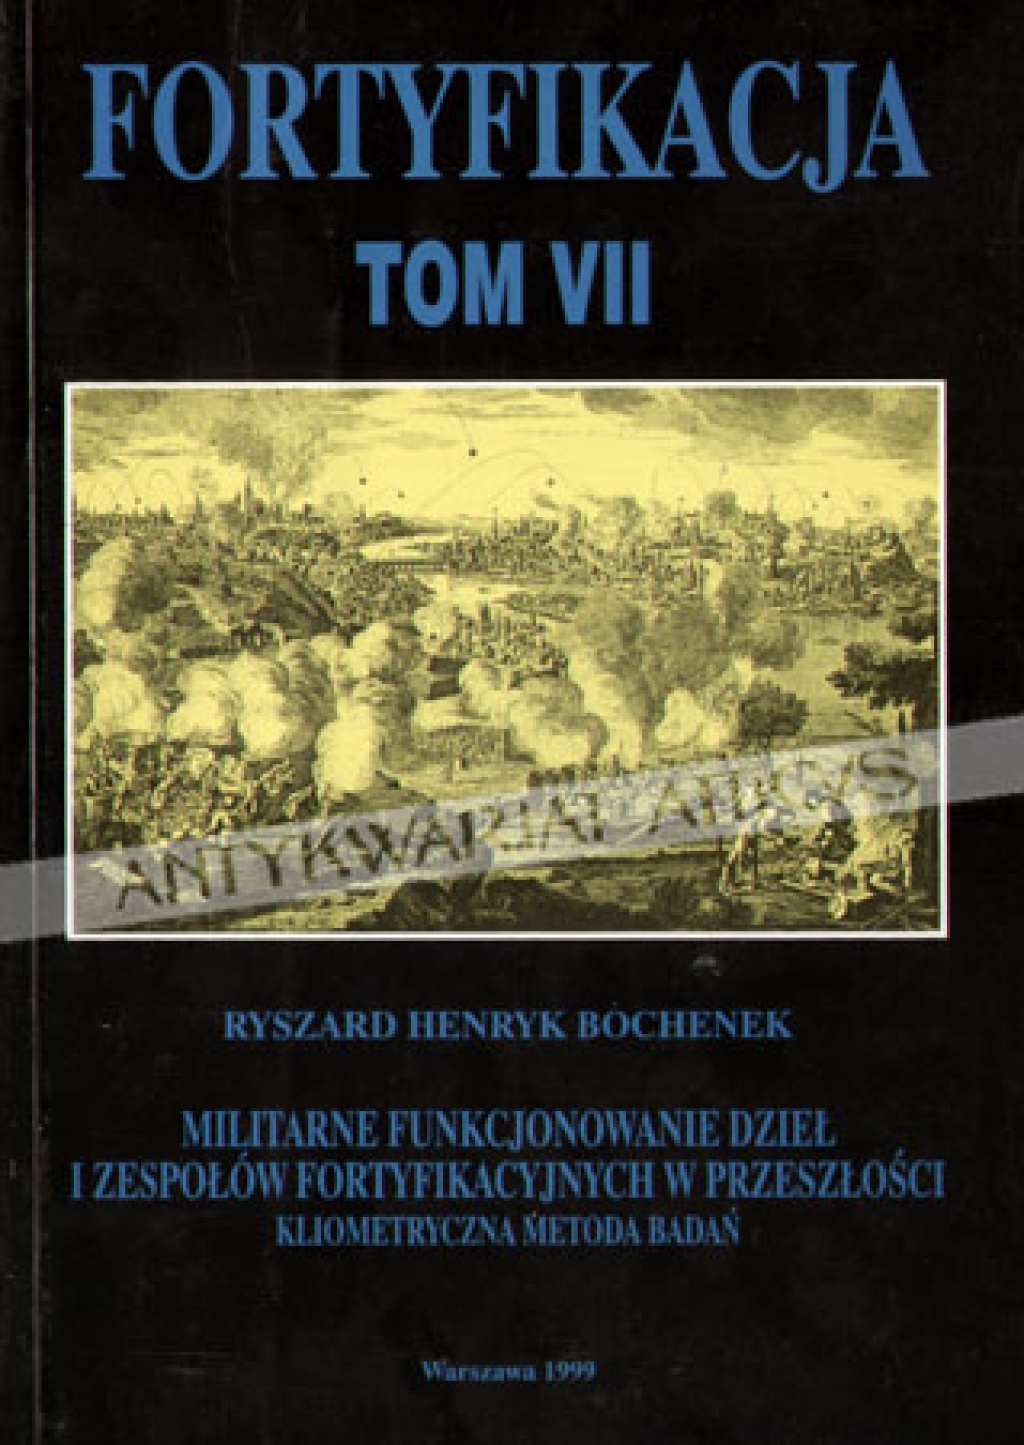 Fortyfikacja. Tom VII. Militarne funkcjonowanie dzieł i zespołów fortyfikacyjnych w przeszłości. Kliometryczna metoda badań